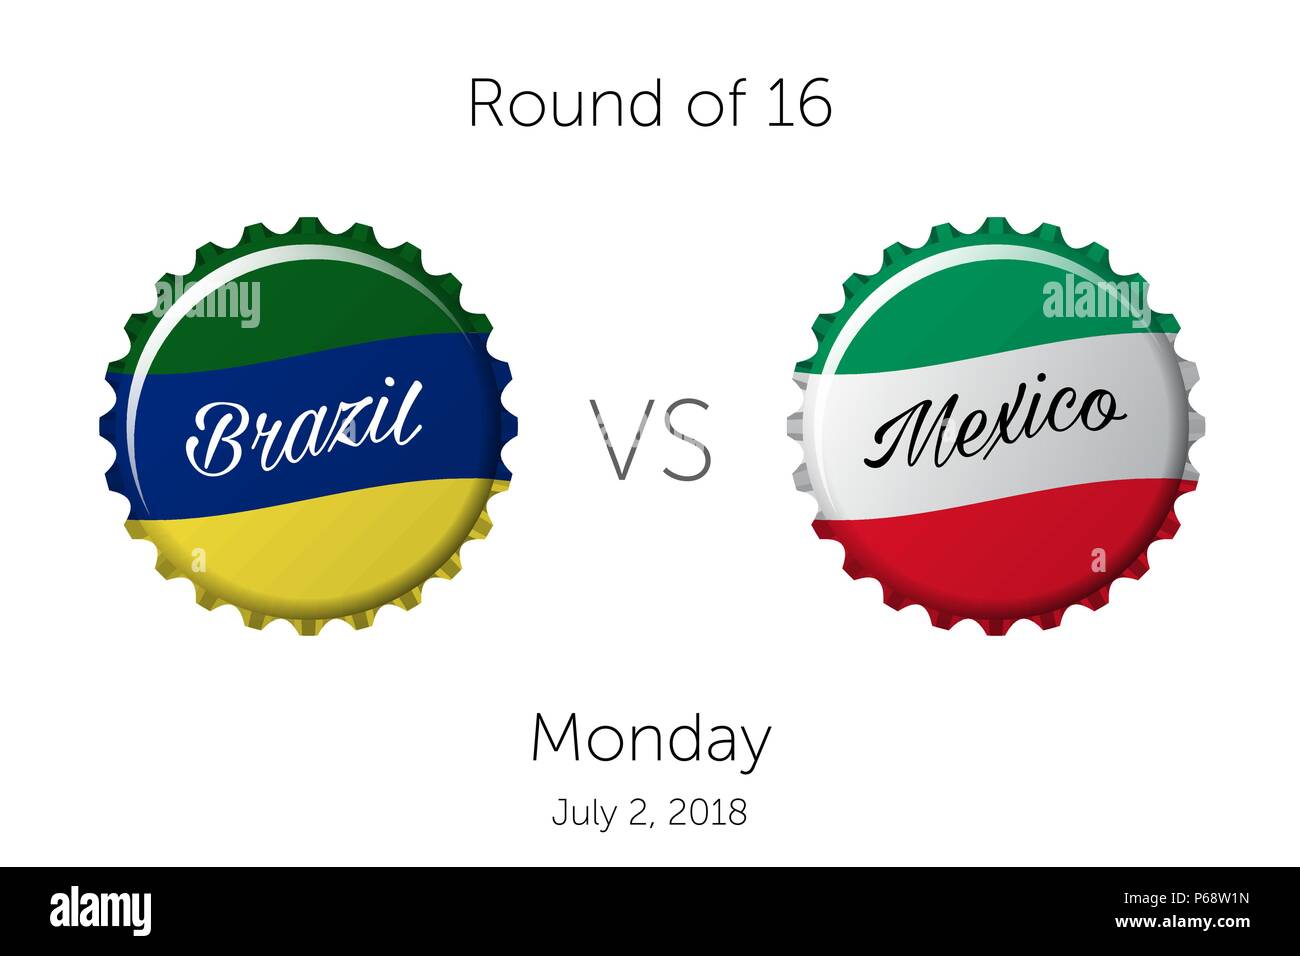 Fussball-WM | Runde 16 - Brasilien VS Mexiko - Juli 2, 2018 Stock Vektor